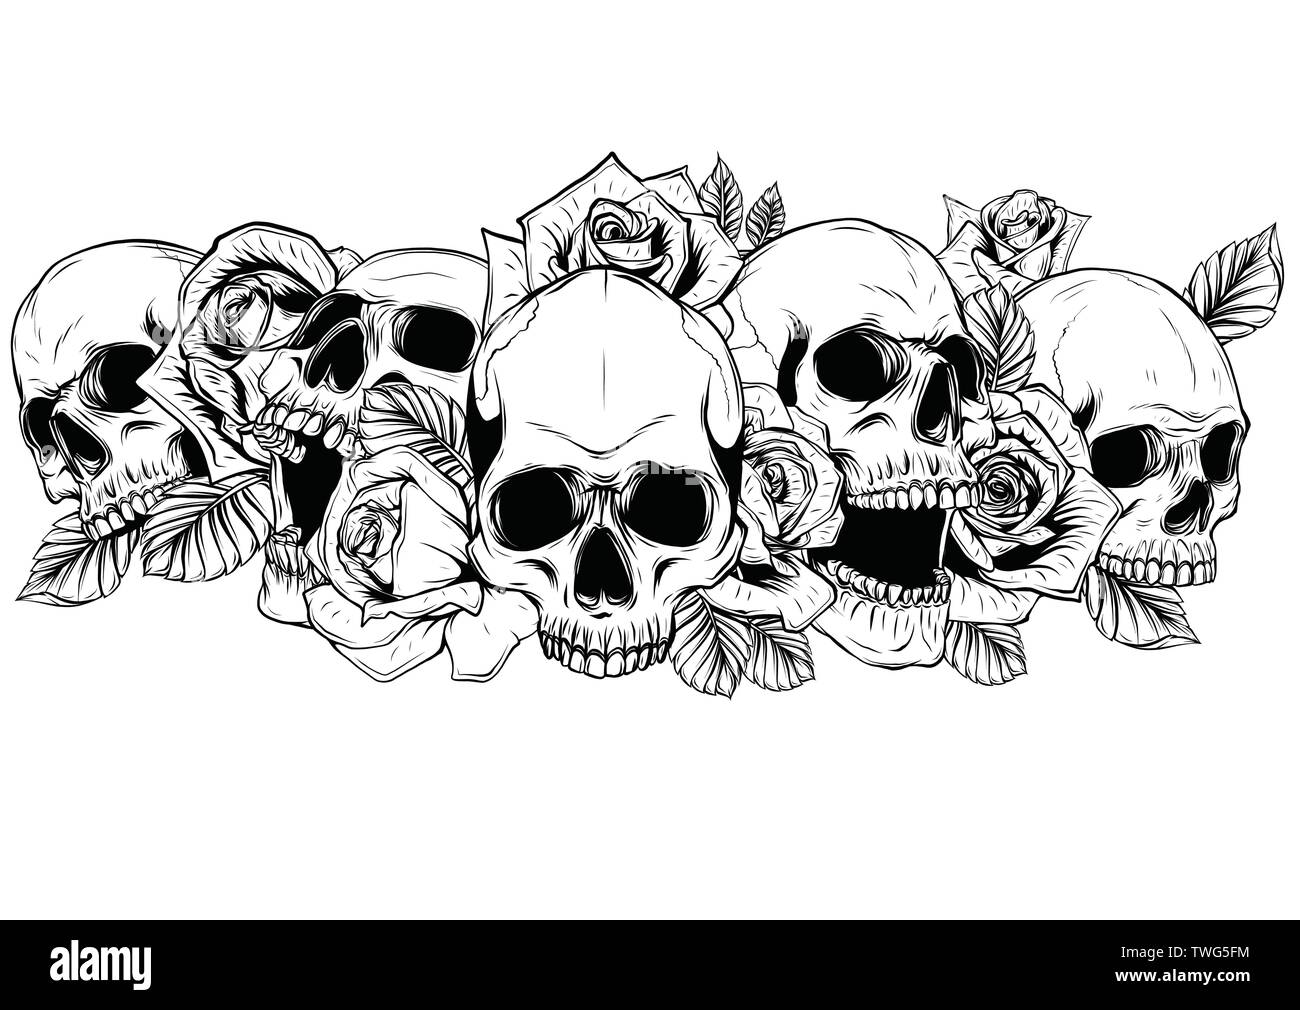 Cranio con rose centifolia tatuaggio da disegno a mano.arte del tatuaggio altamente dettagliate in linea giapponese di stile d'arte. Illustrazione Vettoriale